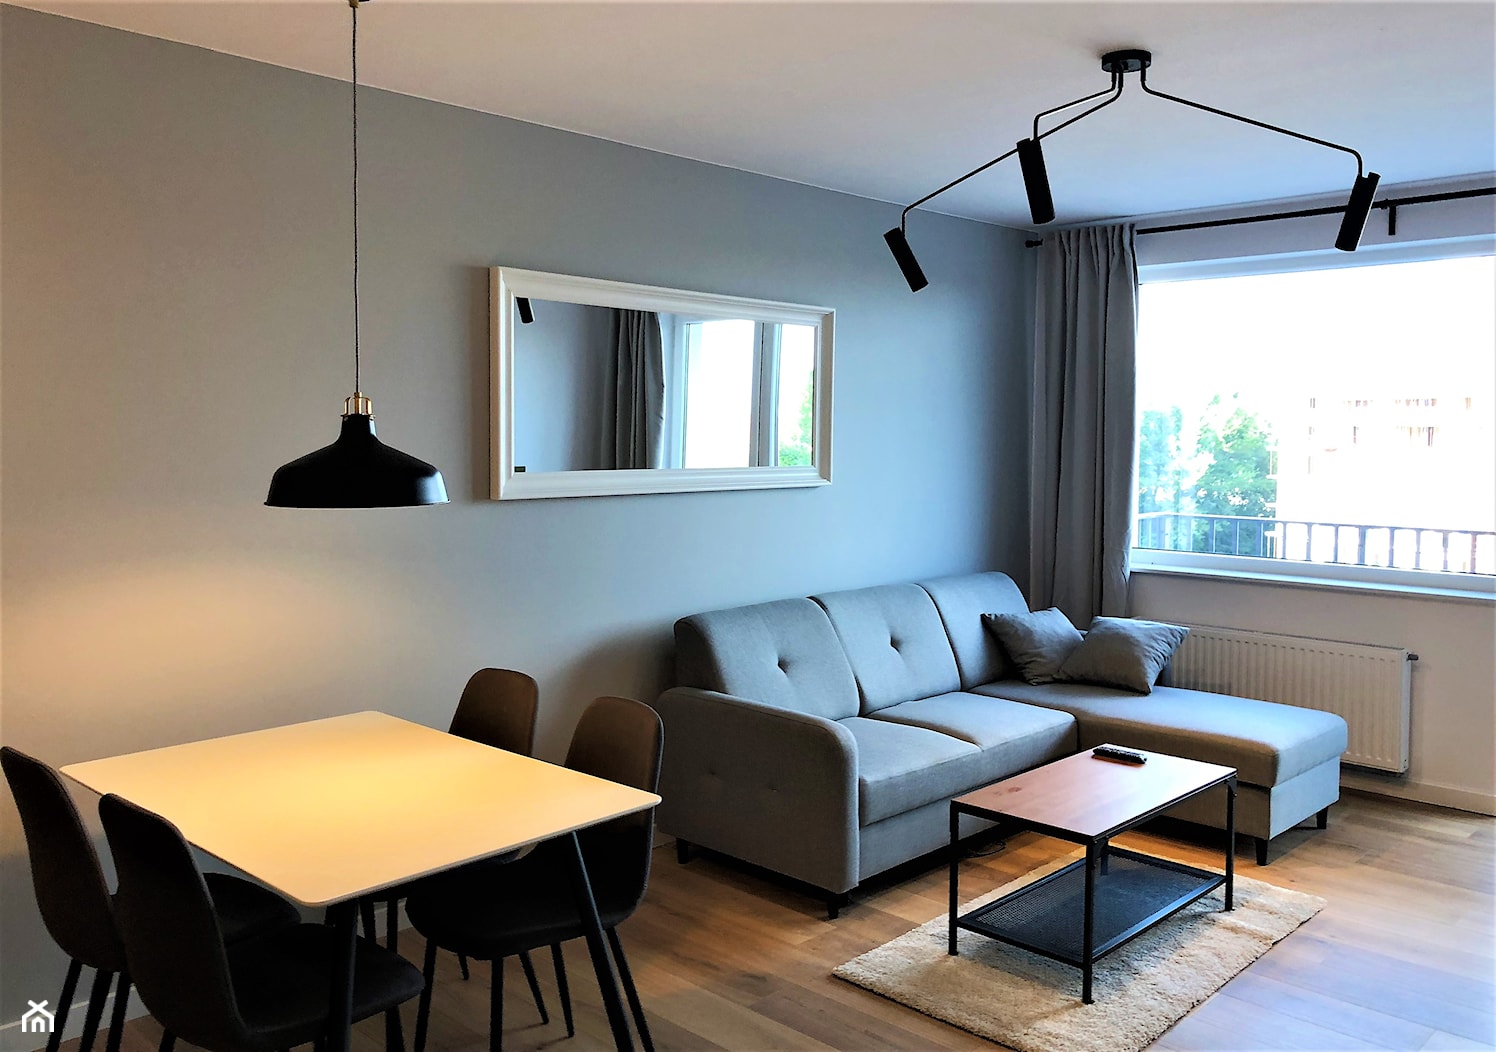 Realizacja - oryginalne mieszkanie na wynajem - Mała biała szara sypialnia, styl nowoczesny - zdjęcie od DekoDeko - Homebook